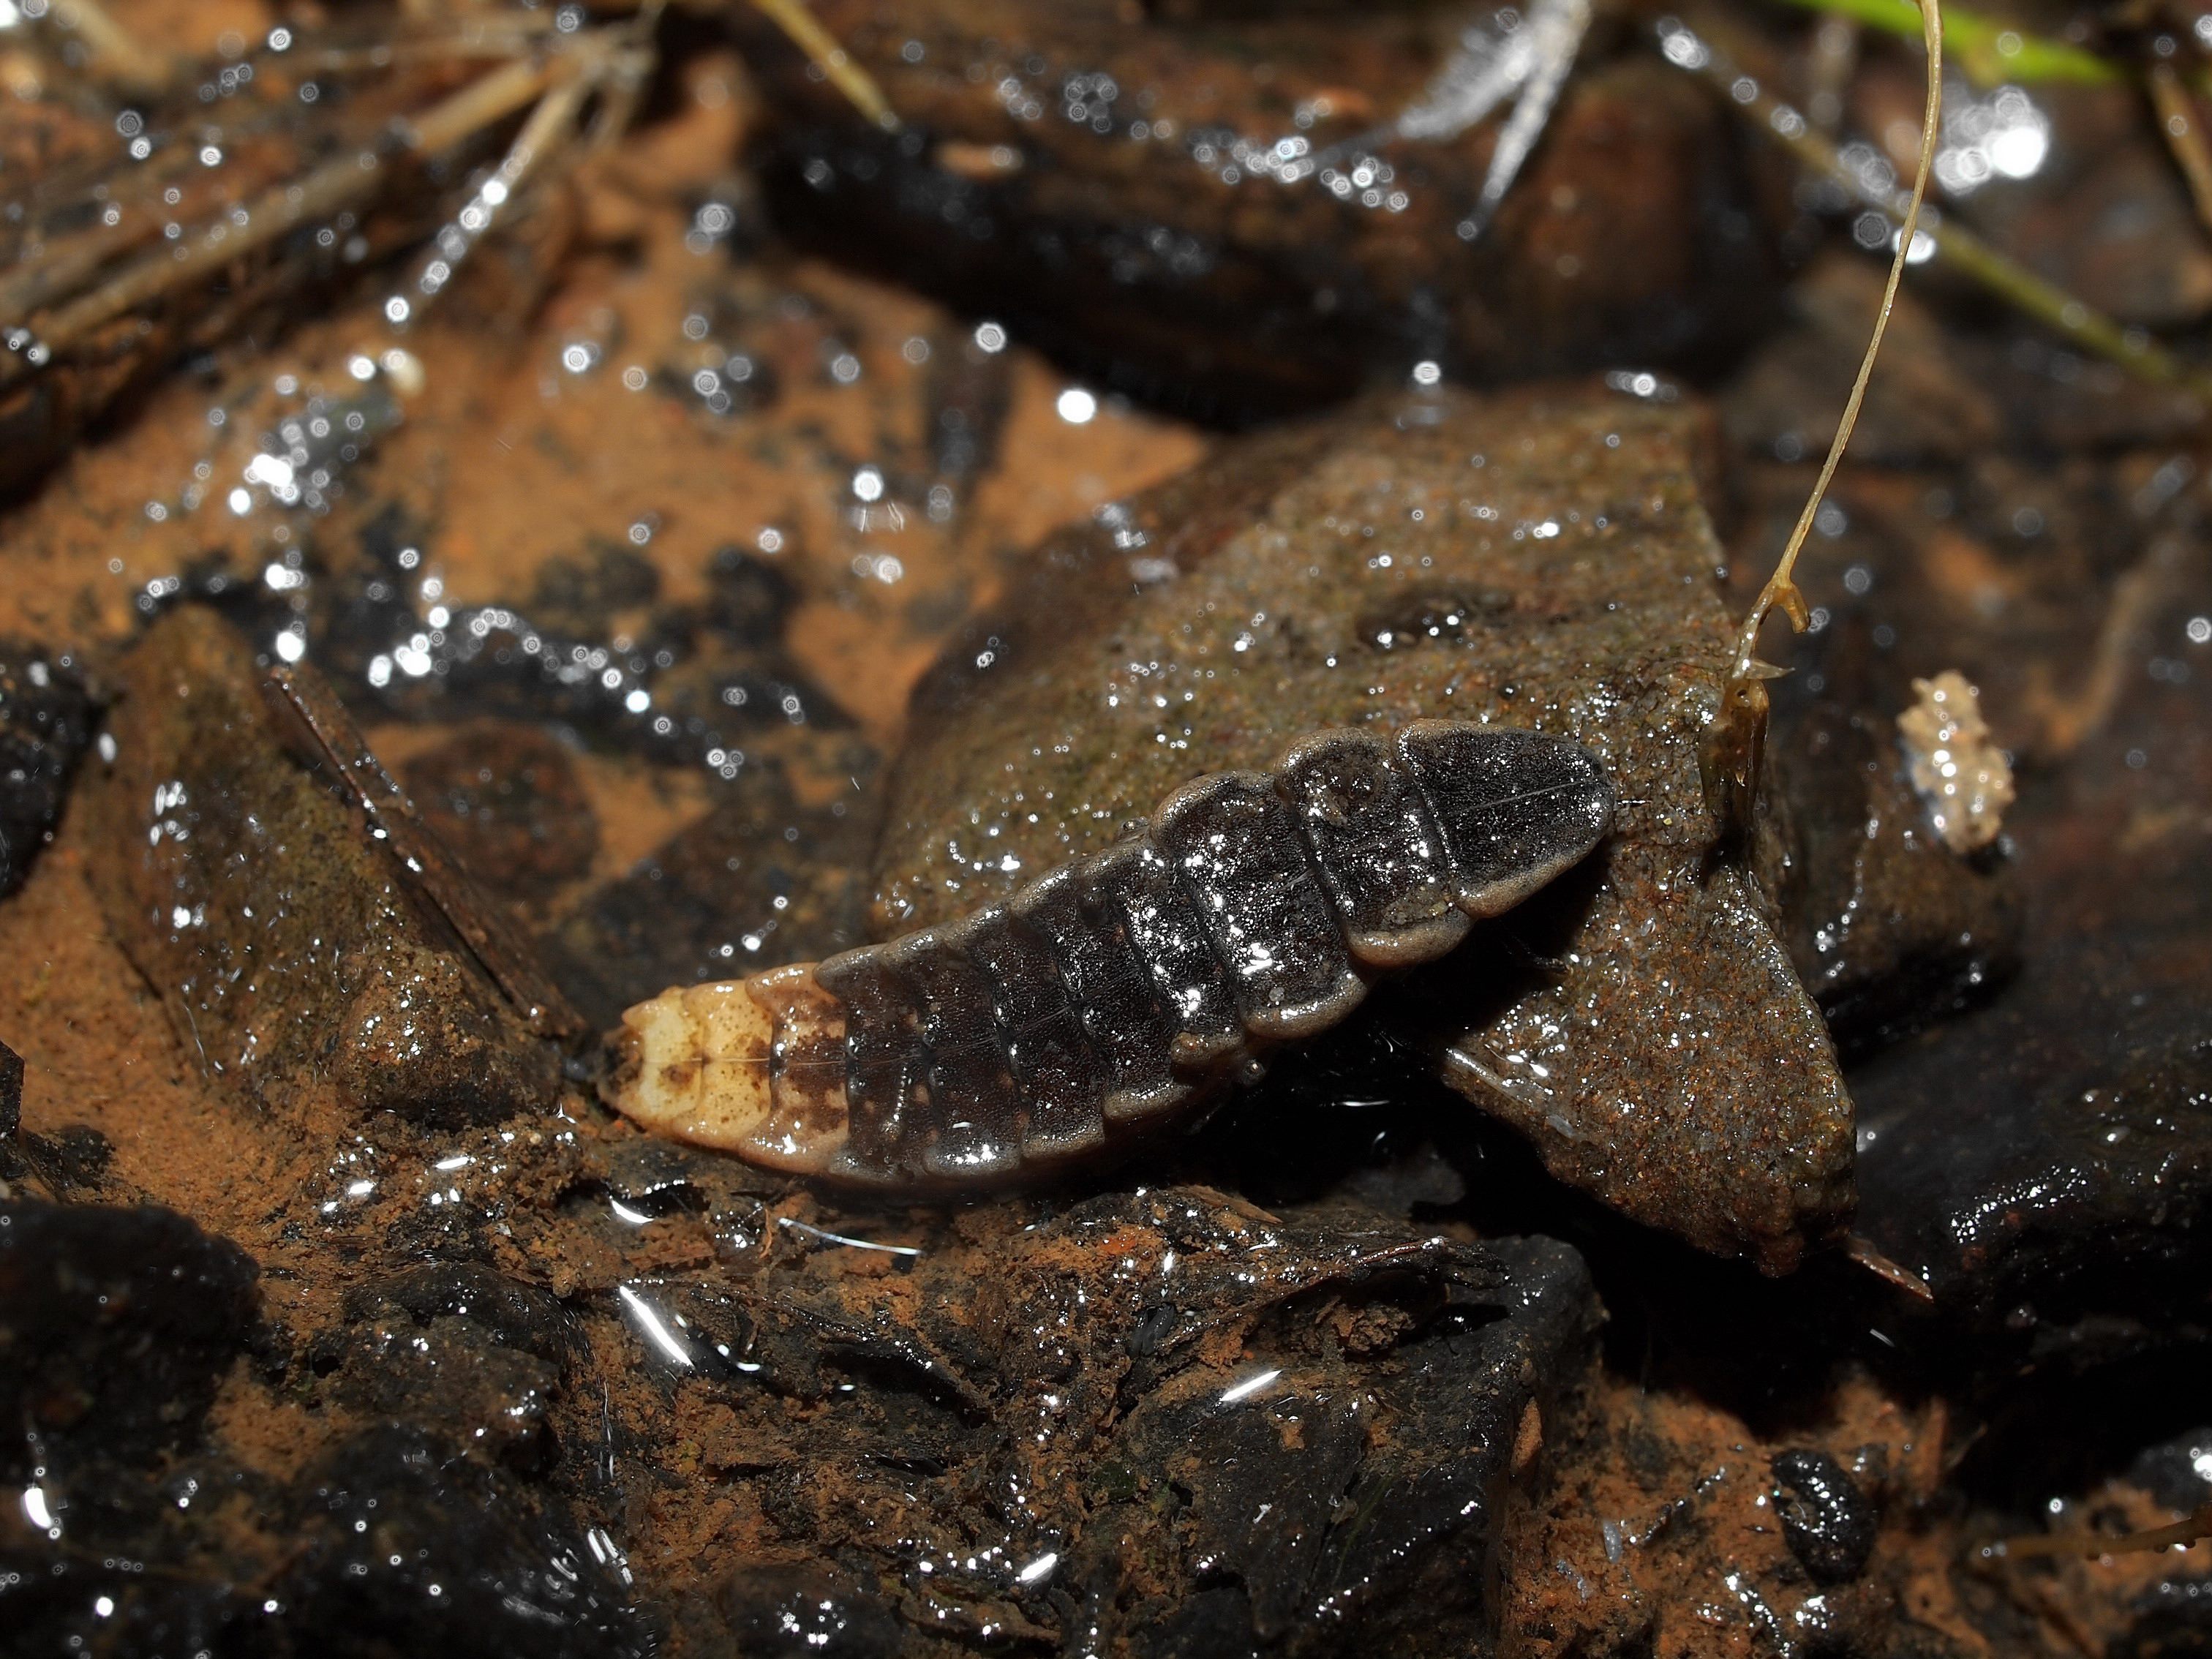 翡翠水庫珍貴稀有保育類「鹿野氏黑脈螢」的幼蟲